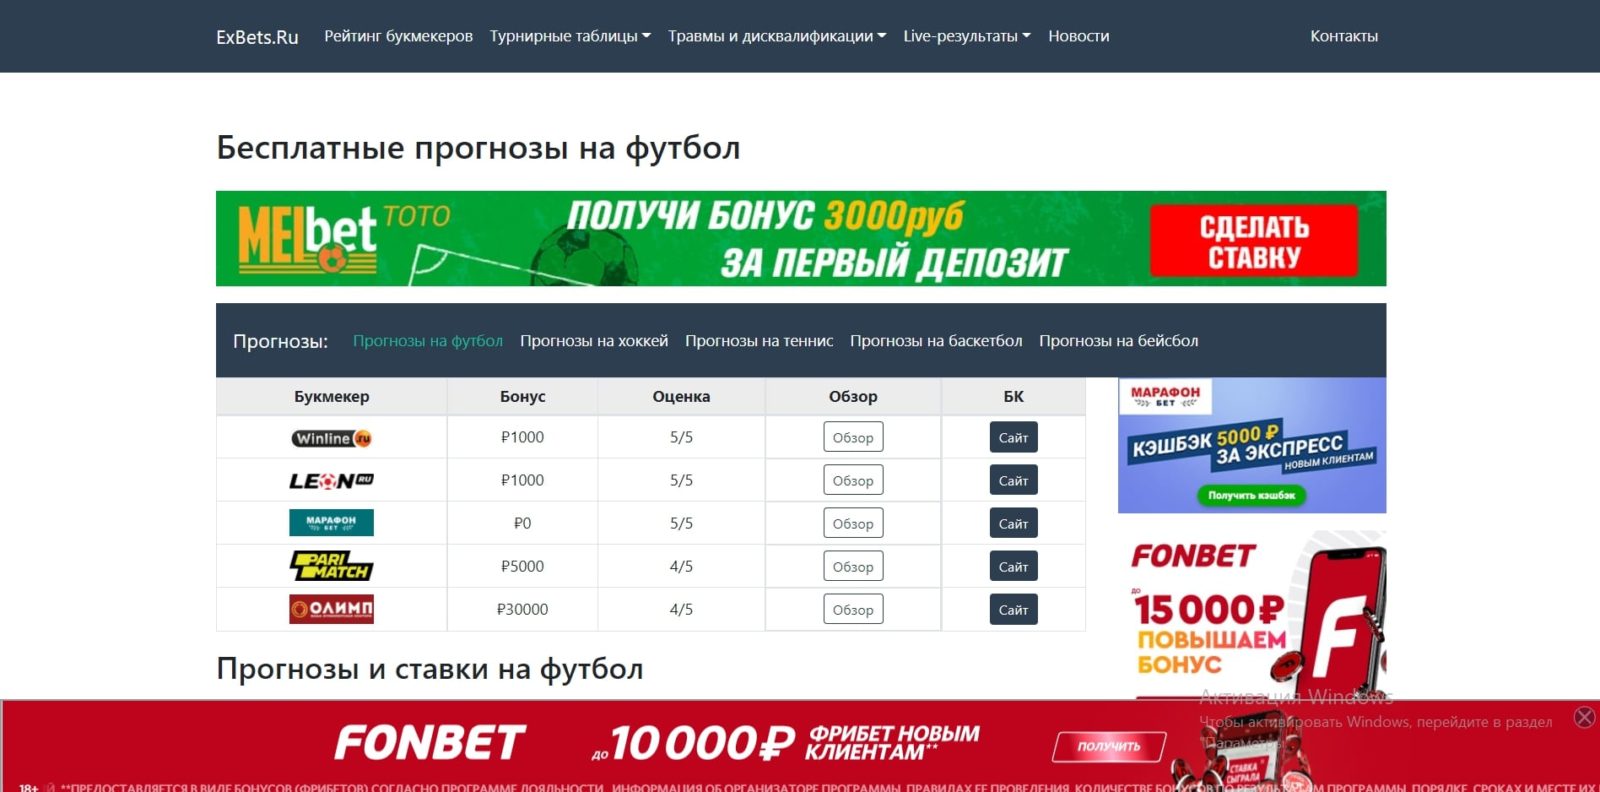 Exbets.ru – бесплатные прогнозы на футбол